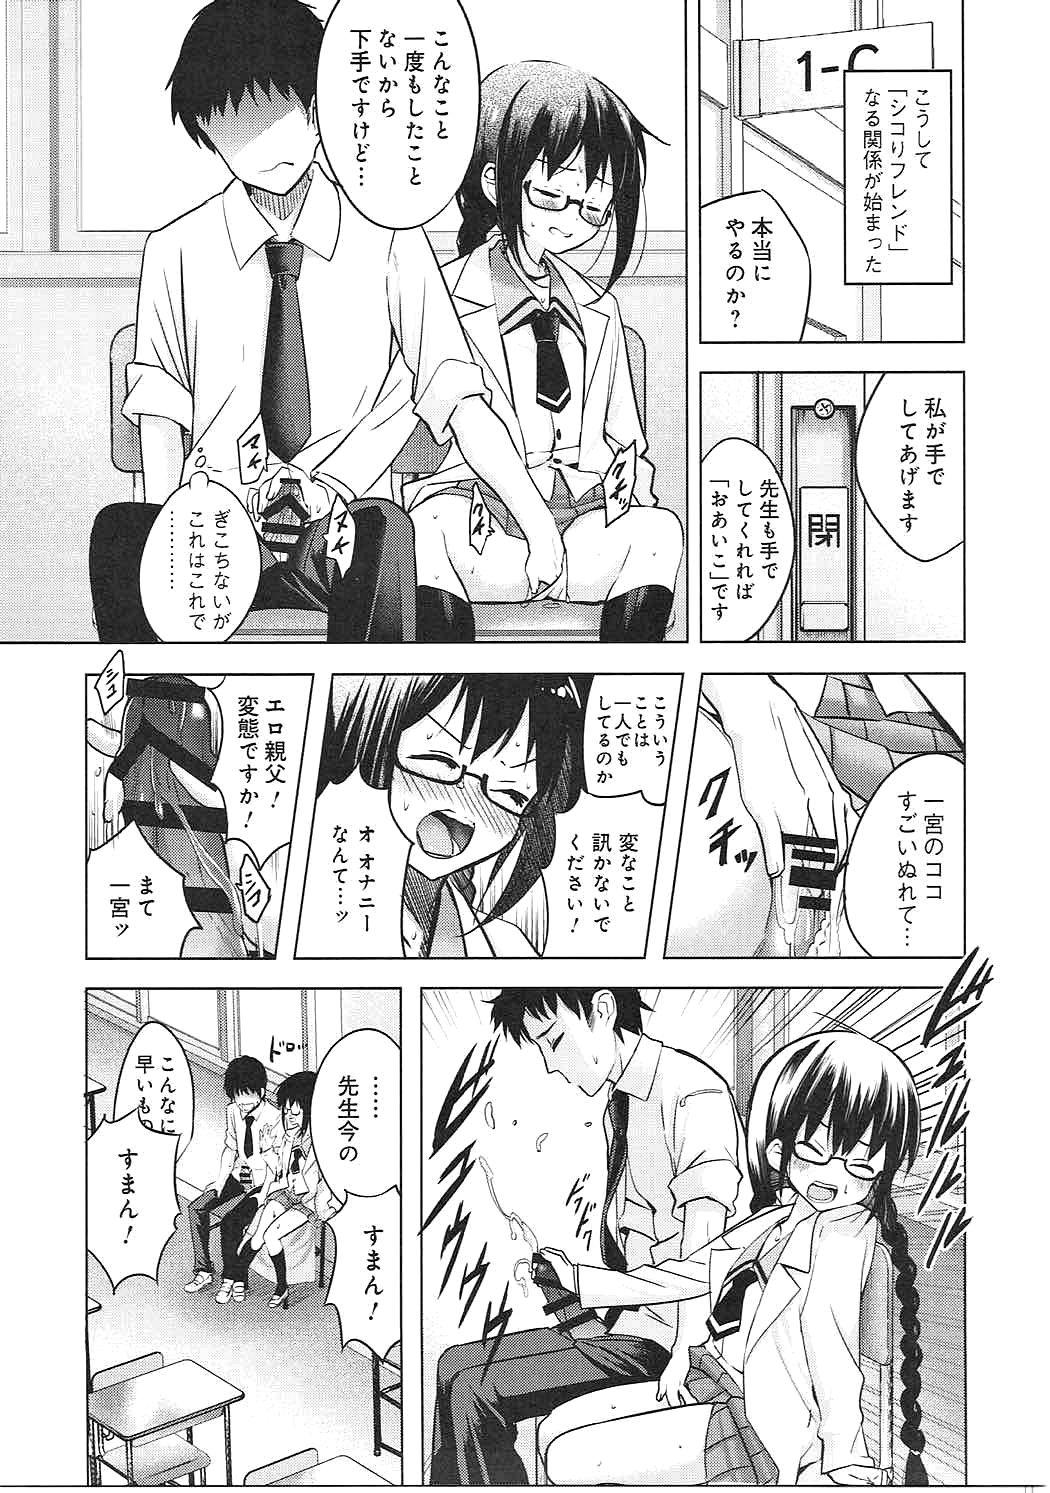 Behind Watashi wa Sensei no Shikotomo desu! - Omaera zenin mendokusai Free Blowjob - Page 8